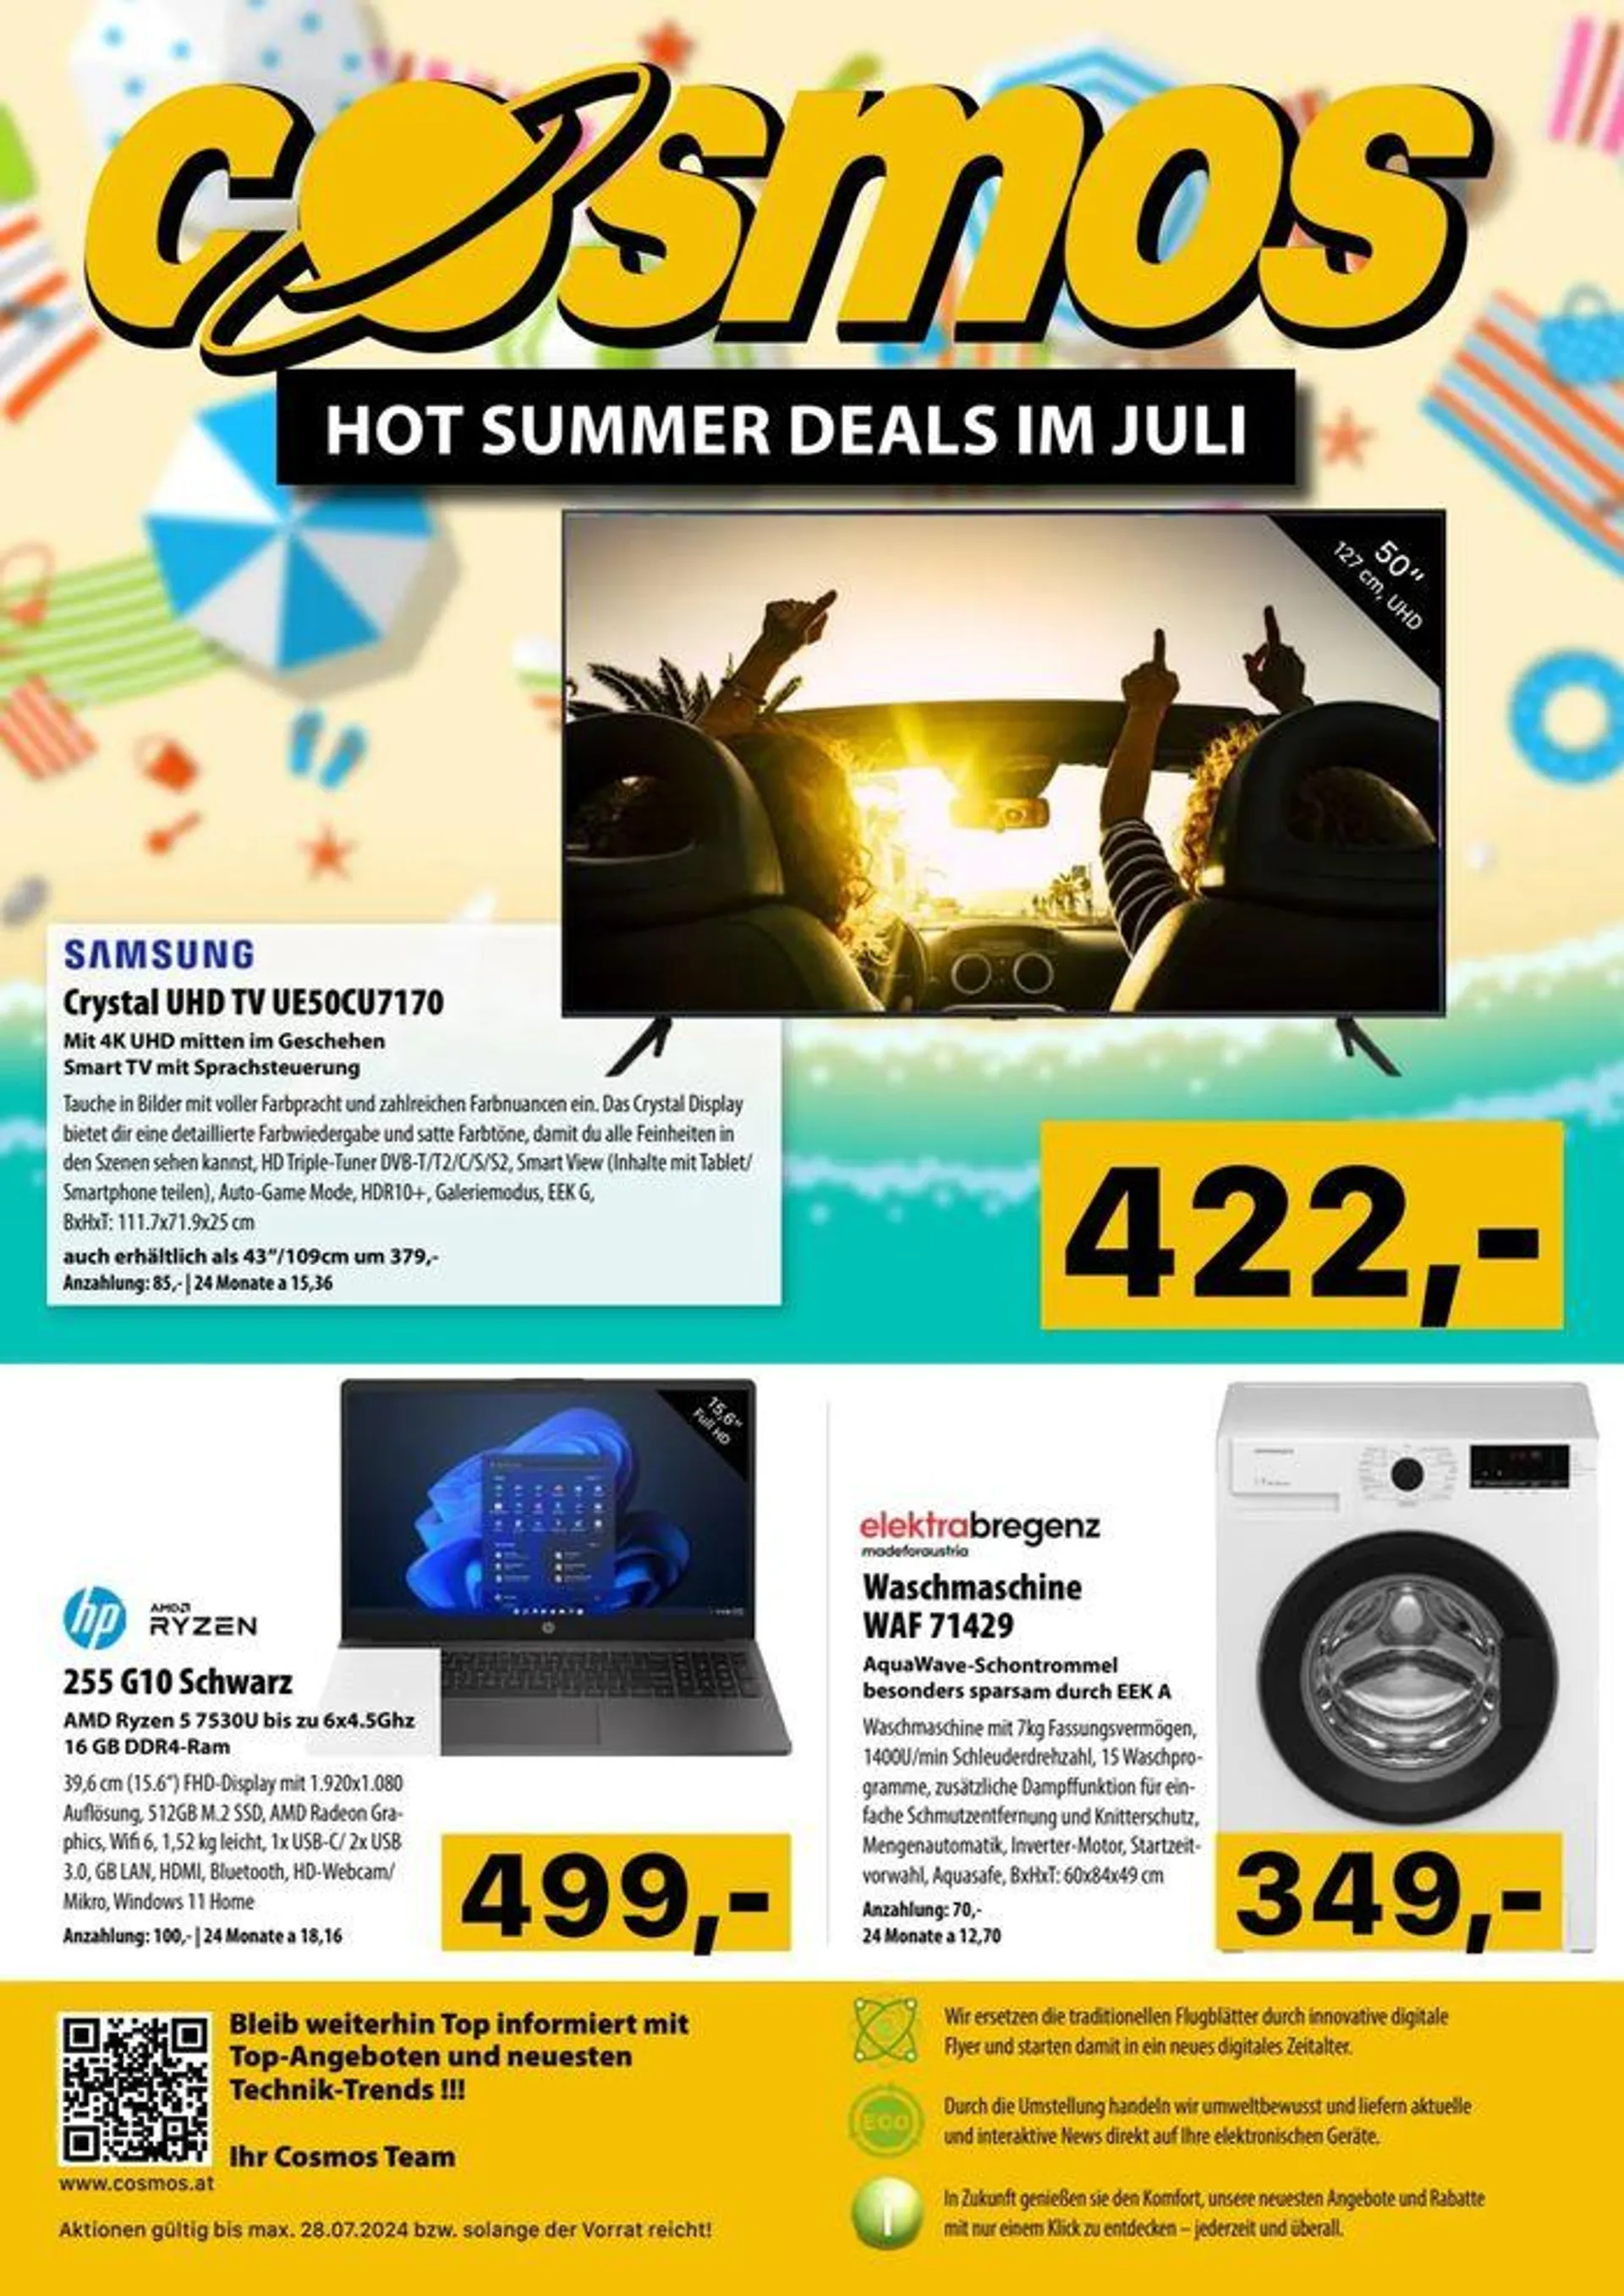 Hot Summer Deals Im Juli - 1